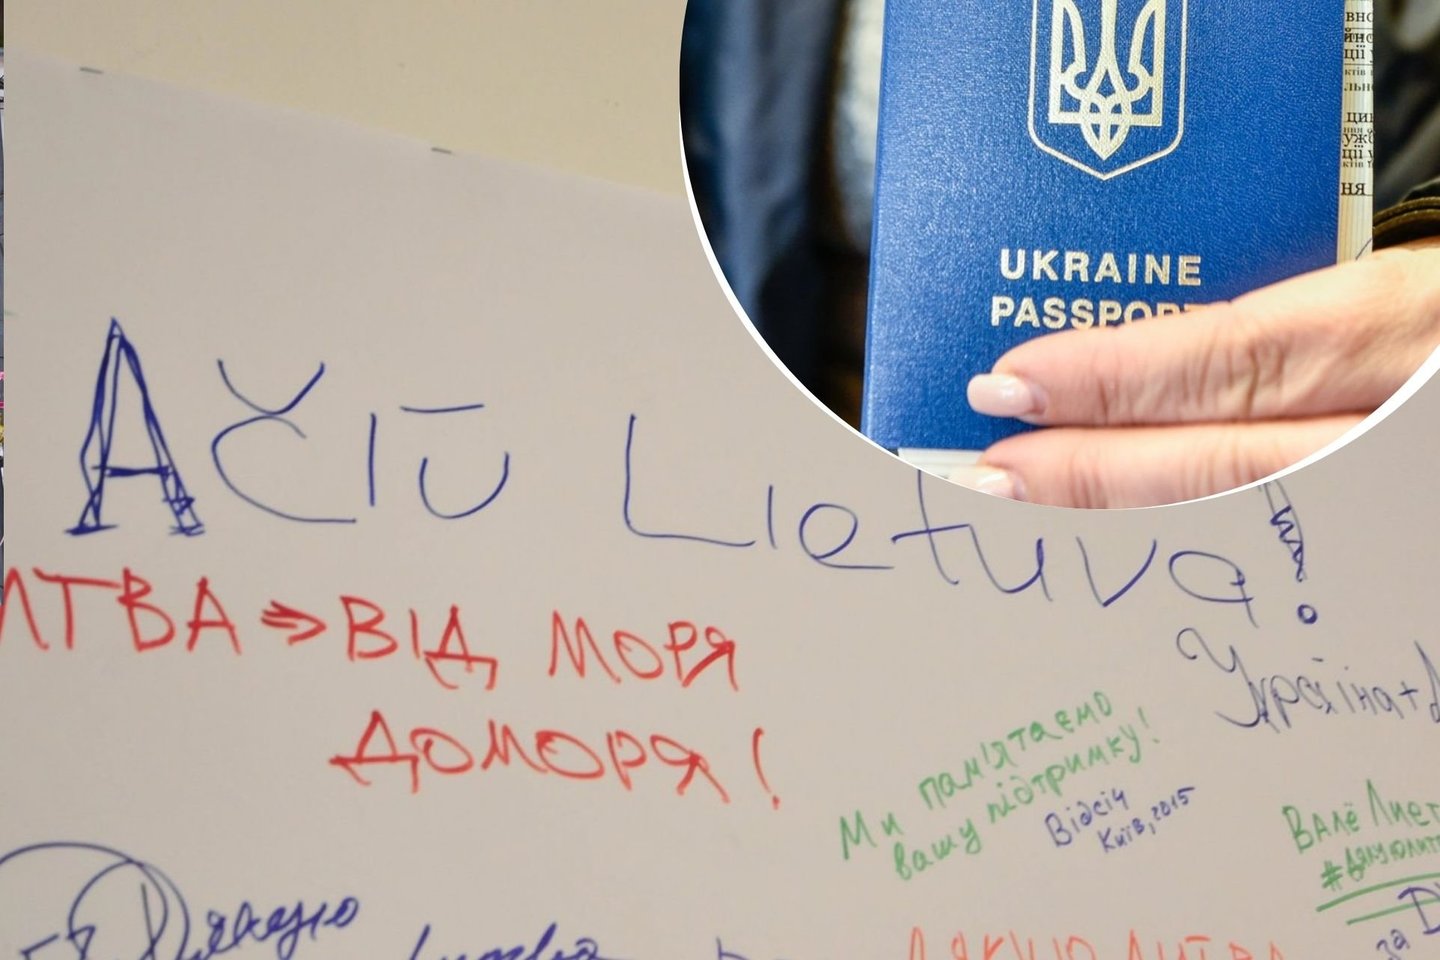 Nuo birželio 1-osios Palangoje iš dabartinių būstų planuojama iškelti apie 200 ukrainiečių.